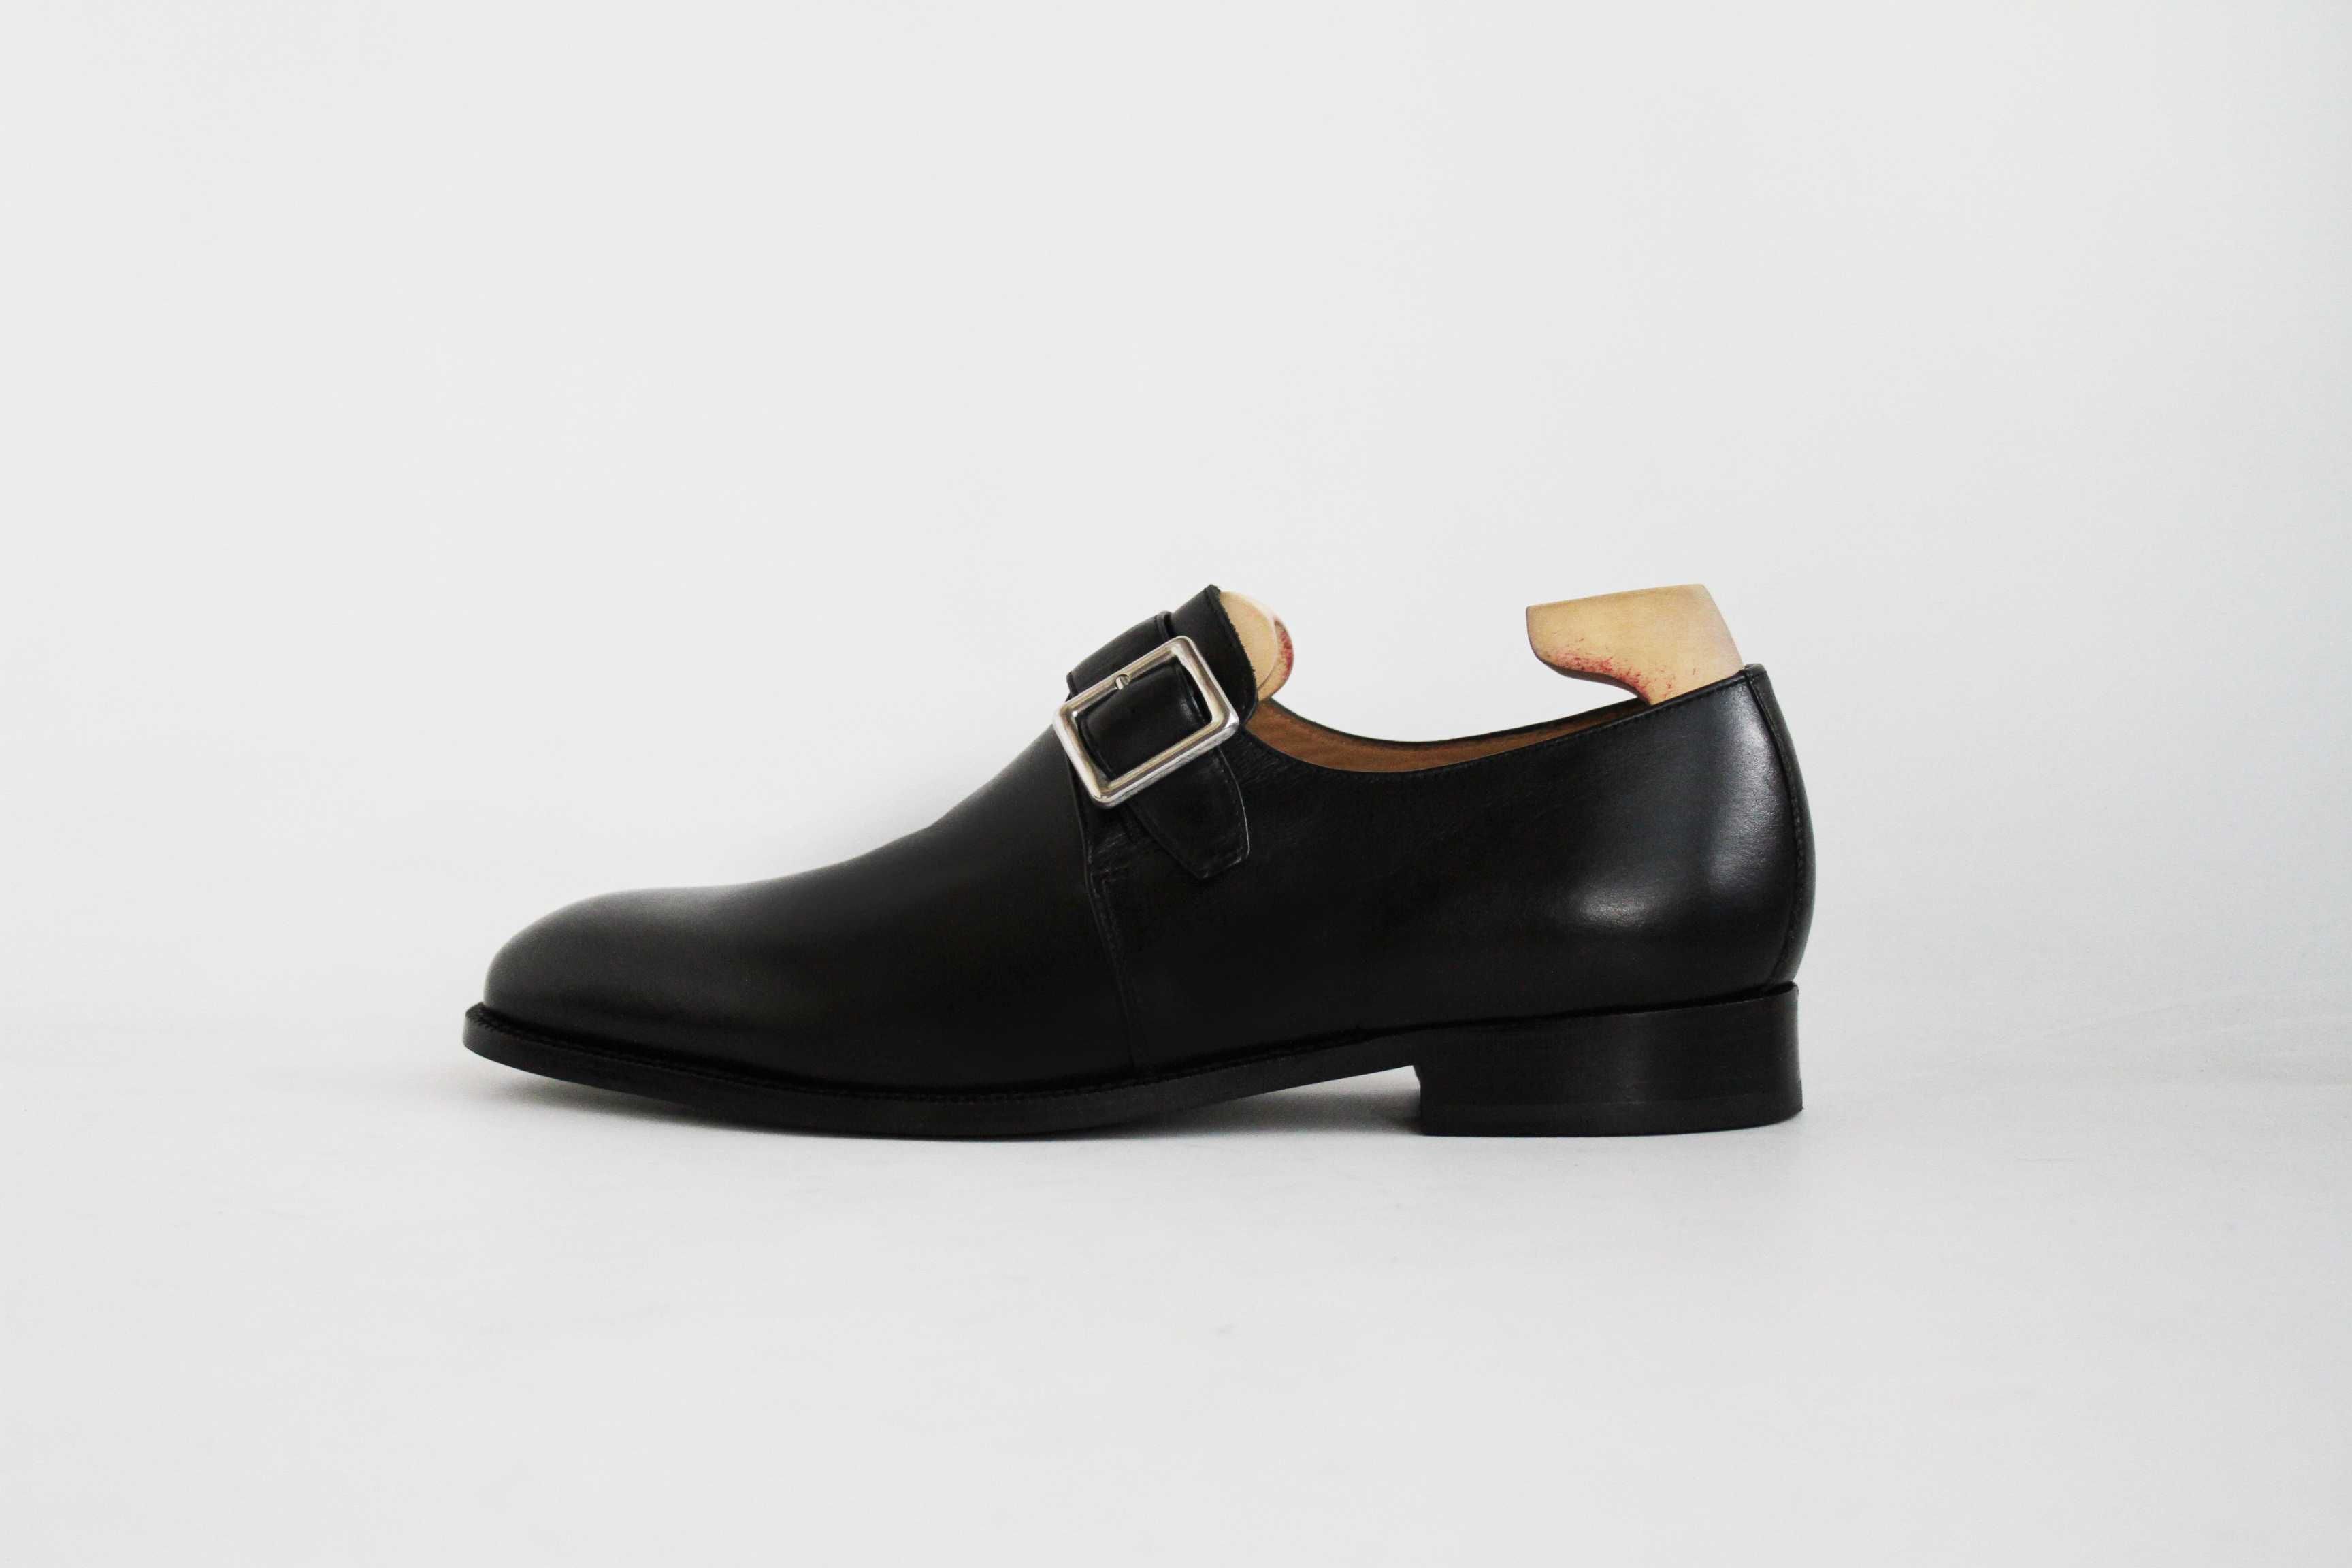 мужские кожаные туфли монки Marks & Spencer размер 42-43